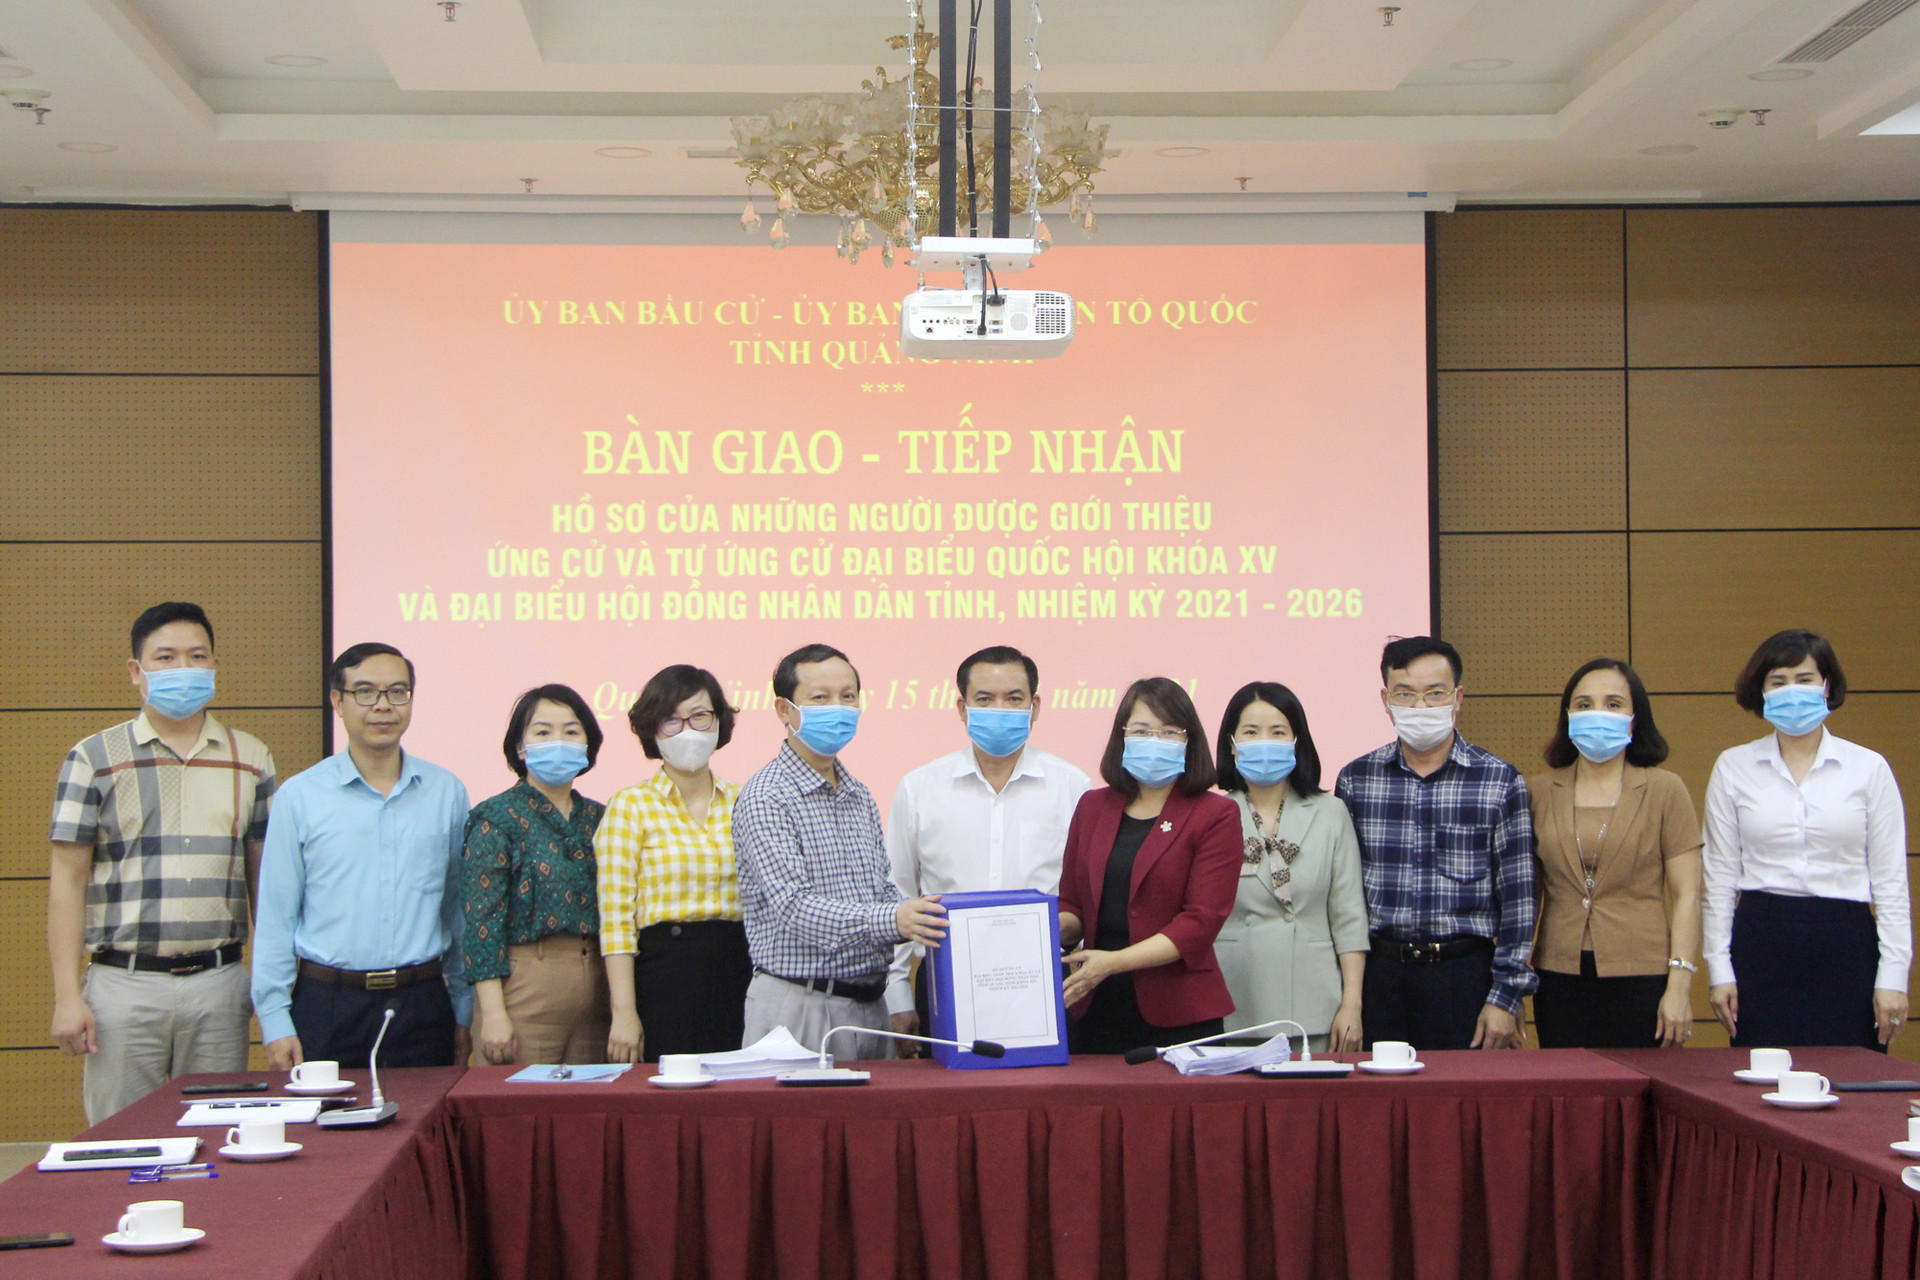 Ủy ban Bầu cử tỉnh bàn giao danh sách trích ngang, hồ sơ người ứng cử cho Ủy ban MTTQ Việt Nam tỉnh Quảng Ninh.